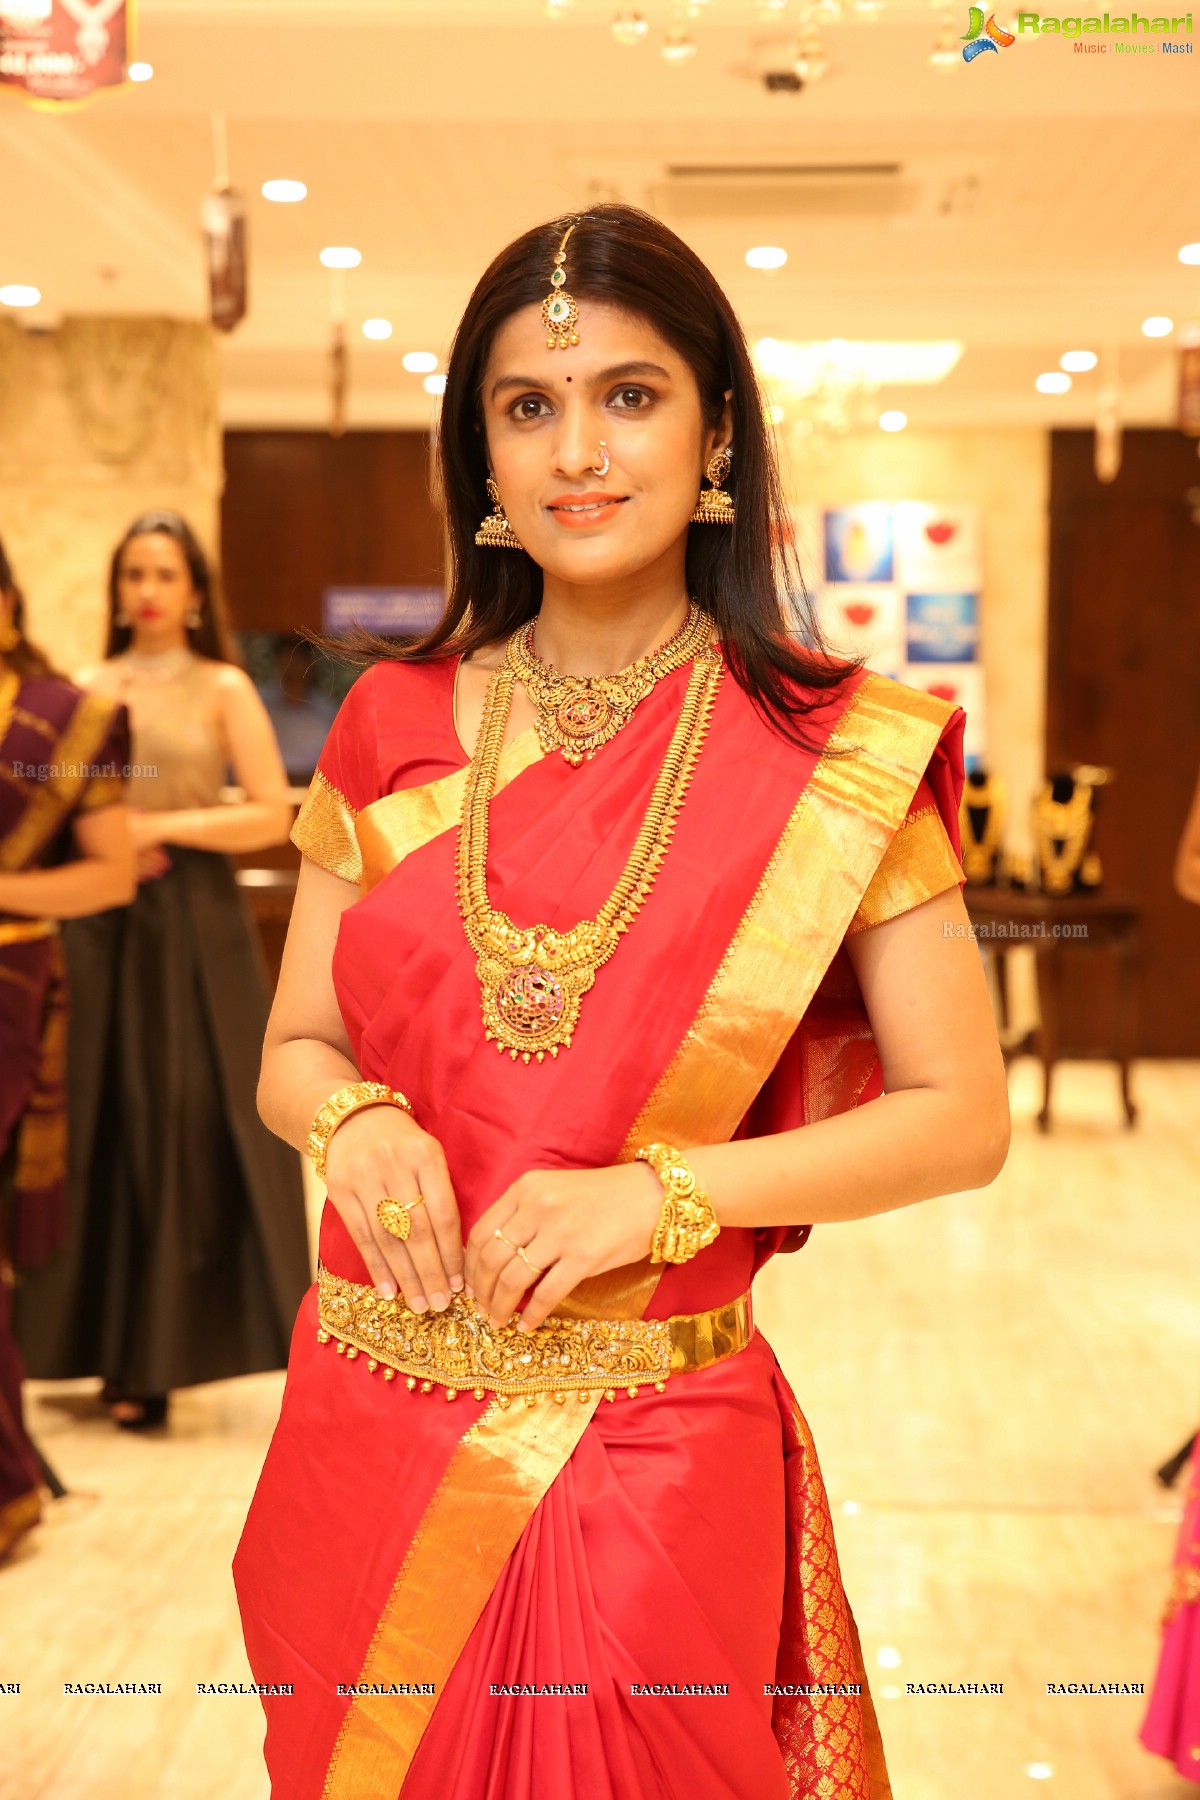 Akshaya Tritiya 2018 - A Jewellery Fashion Showcase by Manepally Jewellers, Punjagutta